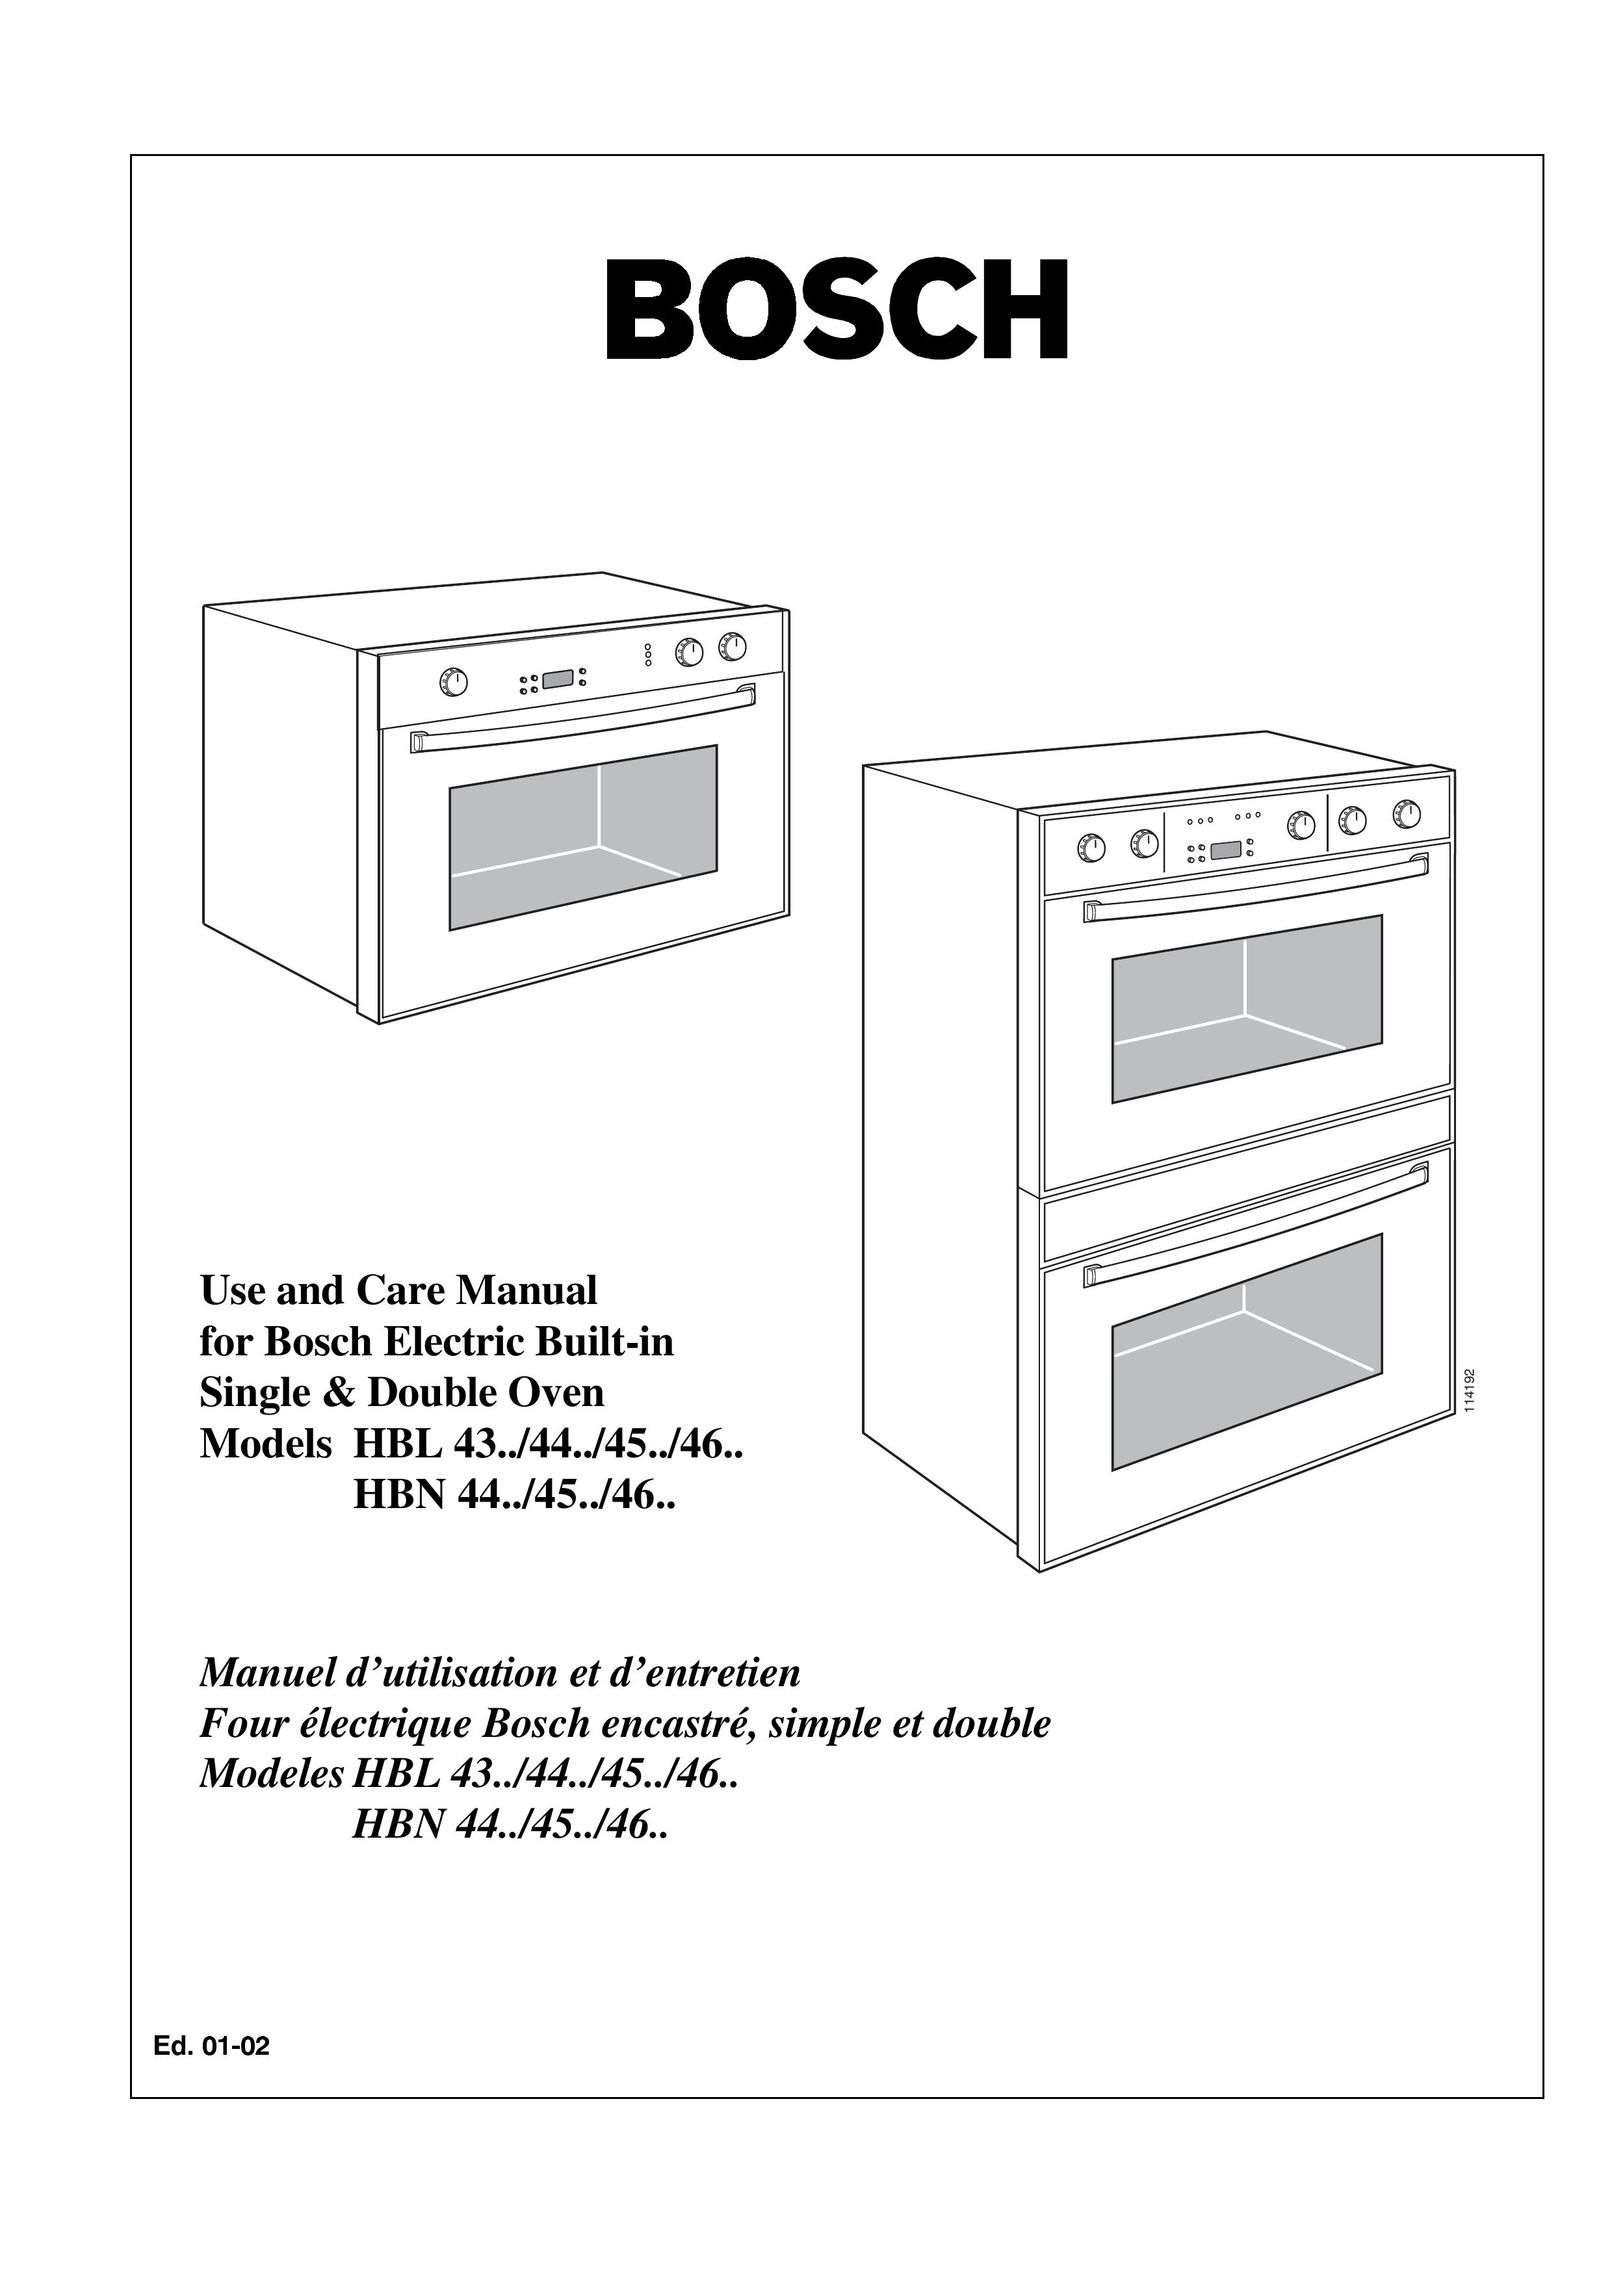 Bosch Appliances HBL 46 Oven User Manual